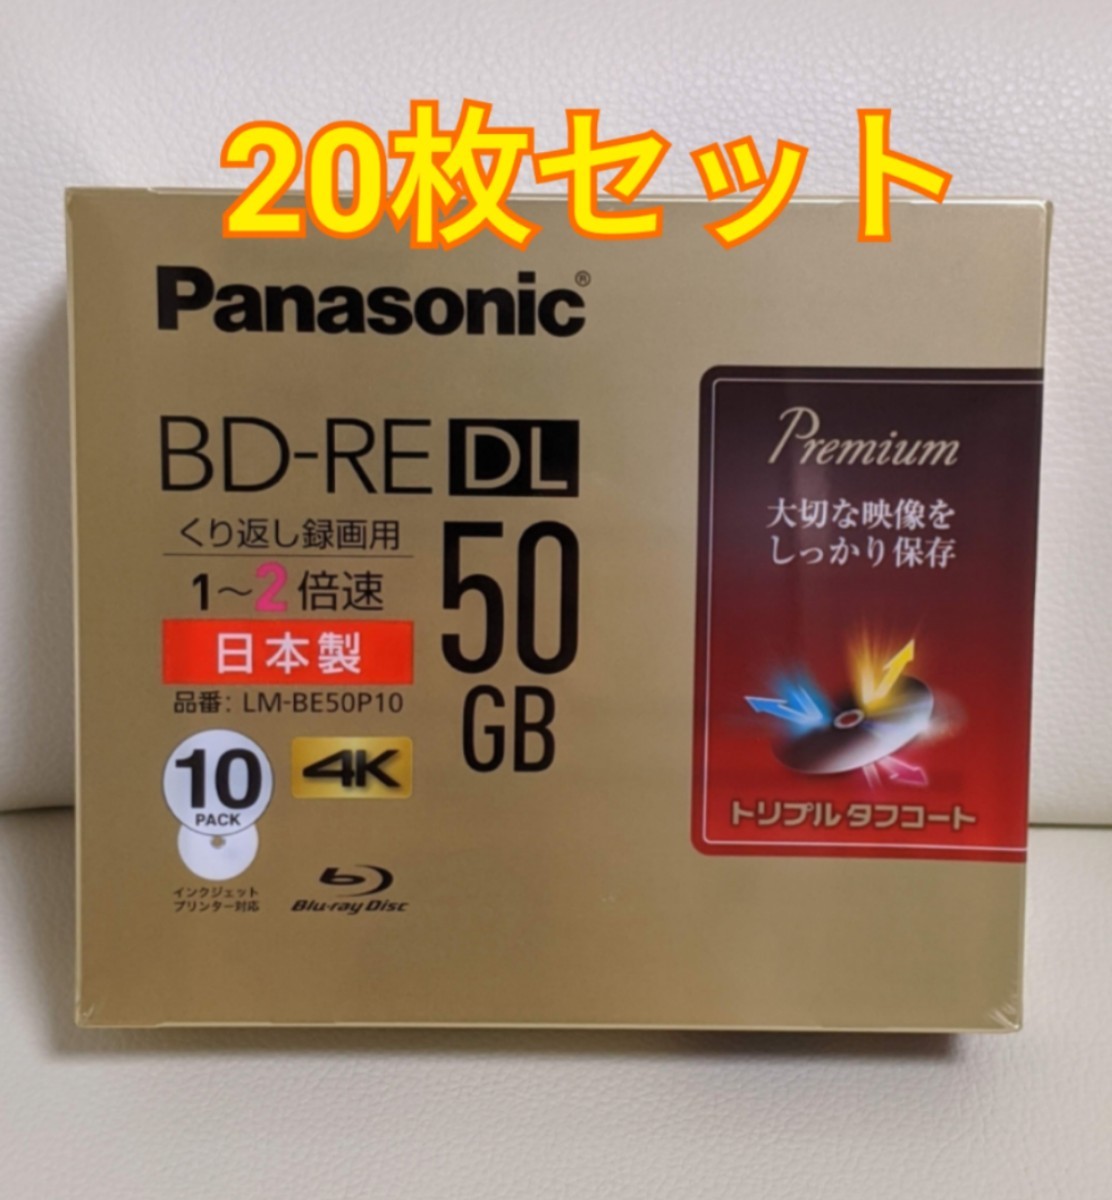 ストアー <br>Panasonic LM-BE50P20 <br>在庫あります <br><br><br